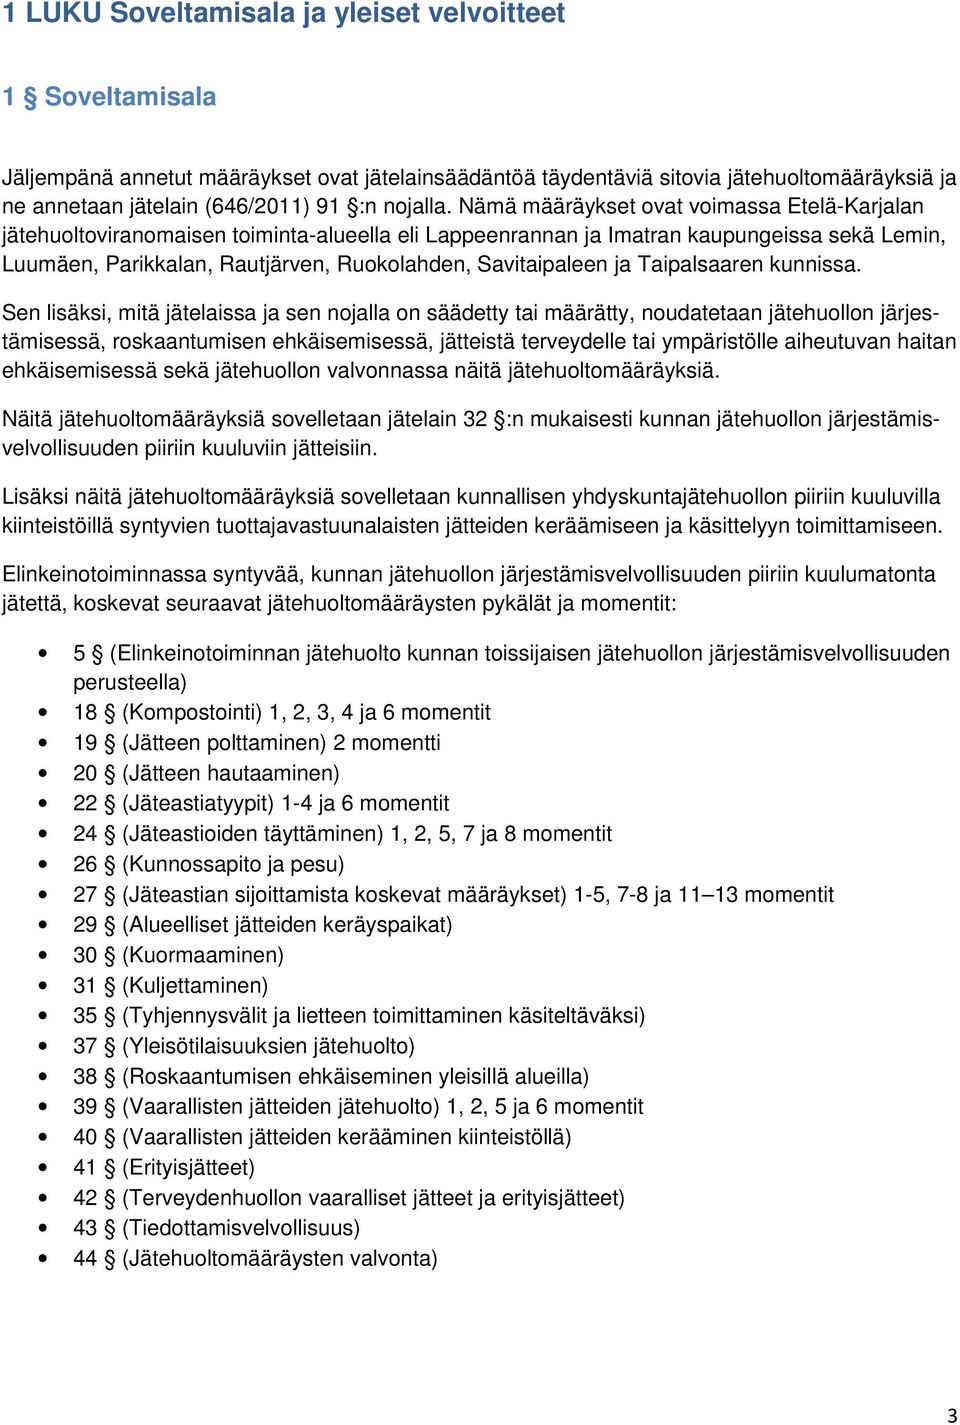 Nämä määräykset ovat voimassa Etelä-Karjalan jätehuoltoviranomaisen toiminta-alueella eli Lappeenrannan ja Imatran kaupungeissa sekä Lemin, Luumäen, Parikkalan, Rautjärven, Ruokolahden, Savitaipaleen